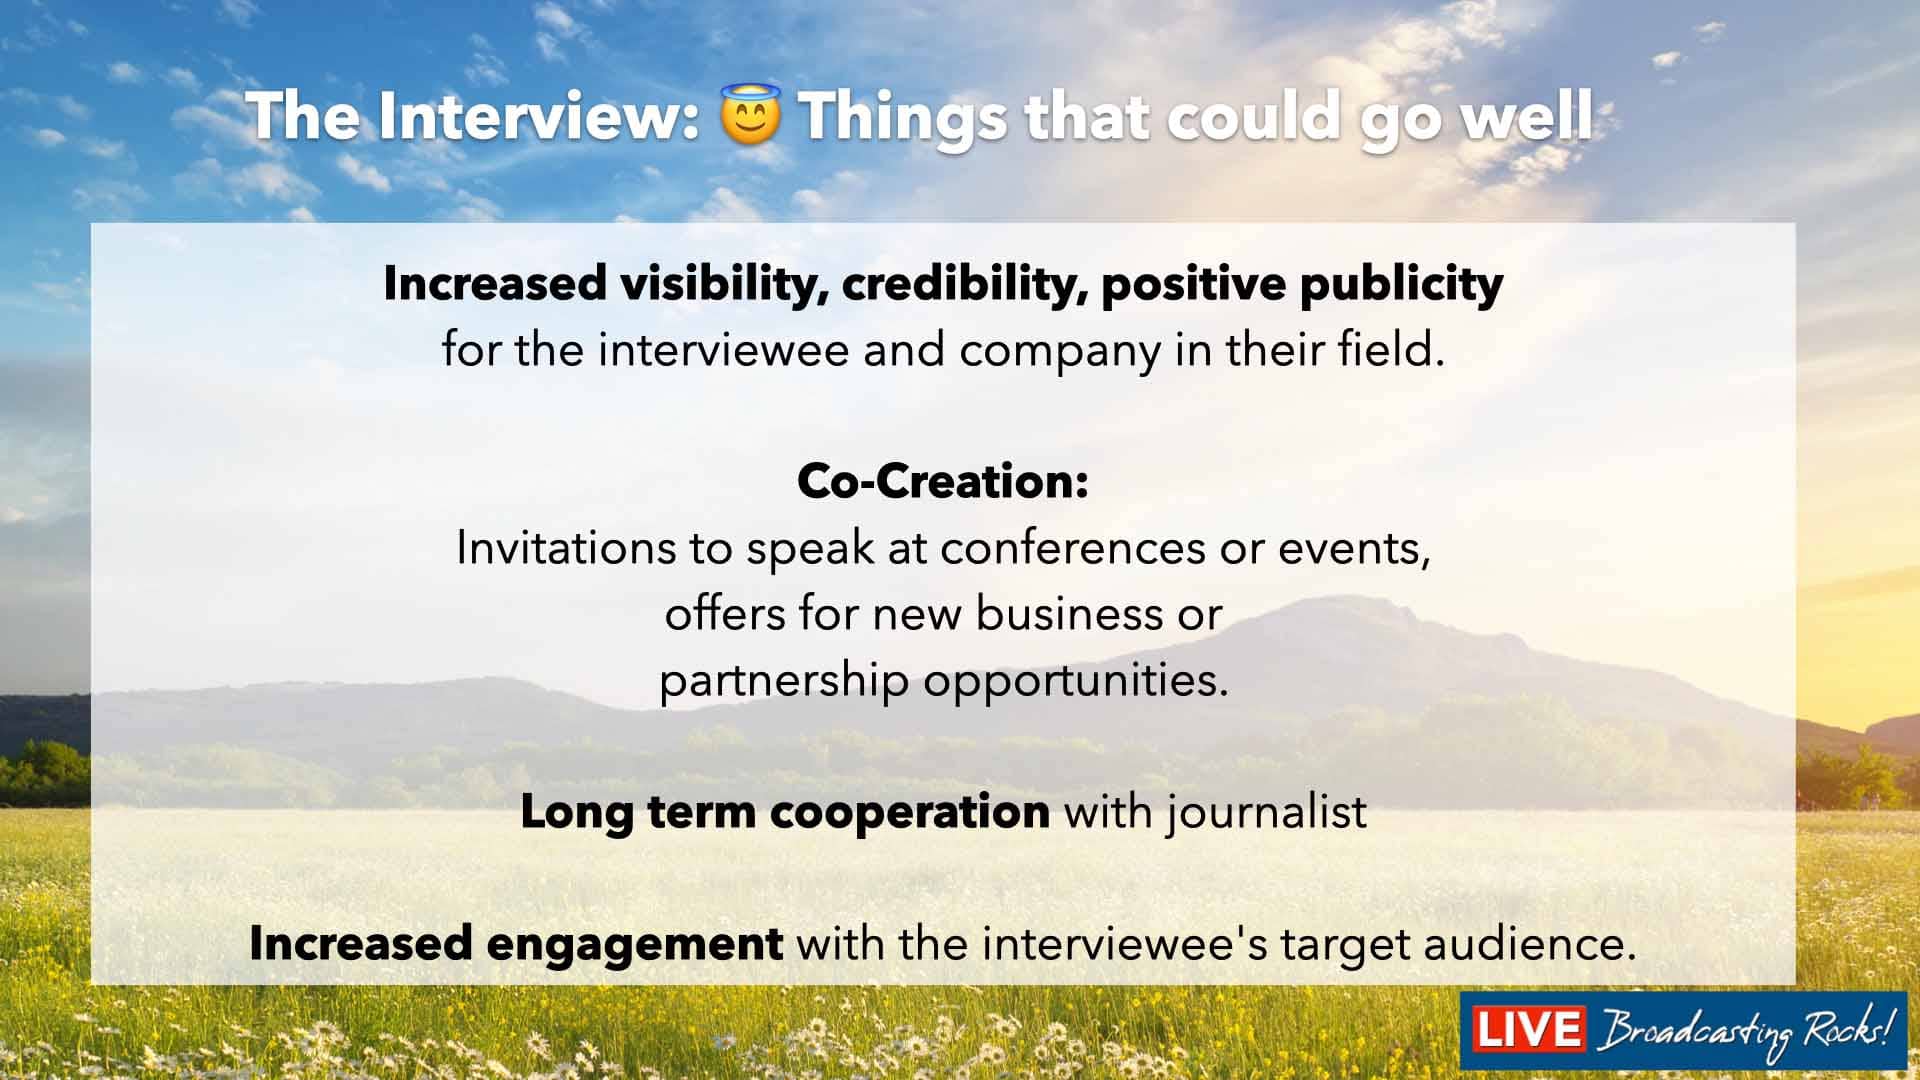 Un'intervista di successo con i media può portare diversi vantaggi sia all'intervistato che alla sua organizzazione. Ecco alcuni dei potenziali vantaggi